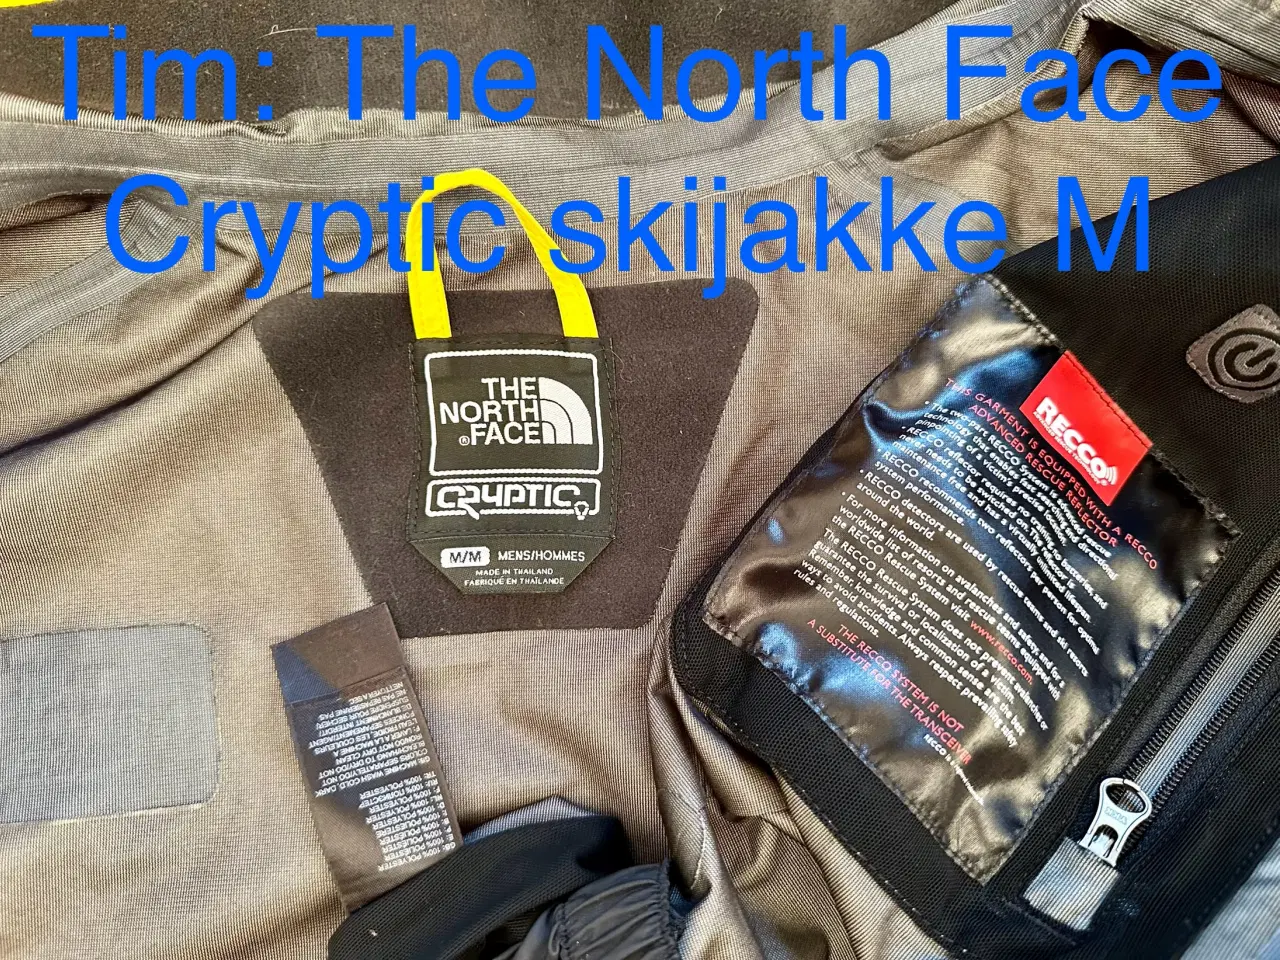 Billede 5 - The North Face Cryptic skijakke M 